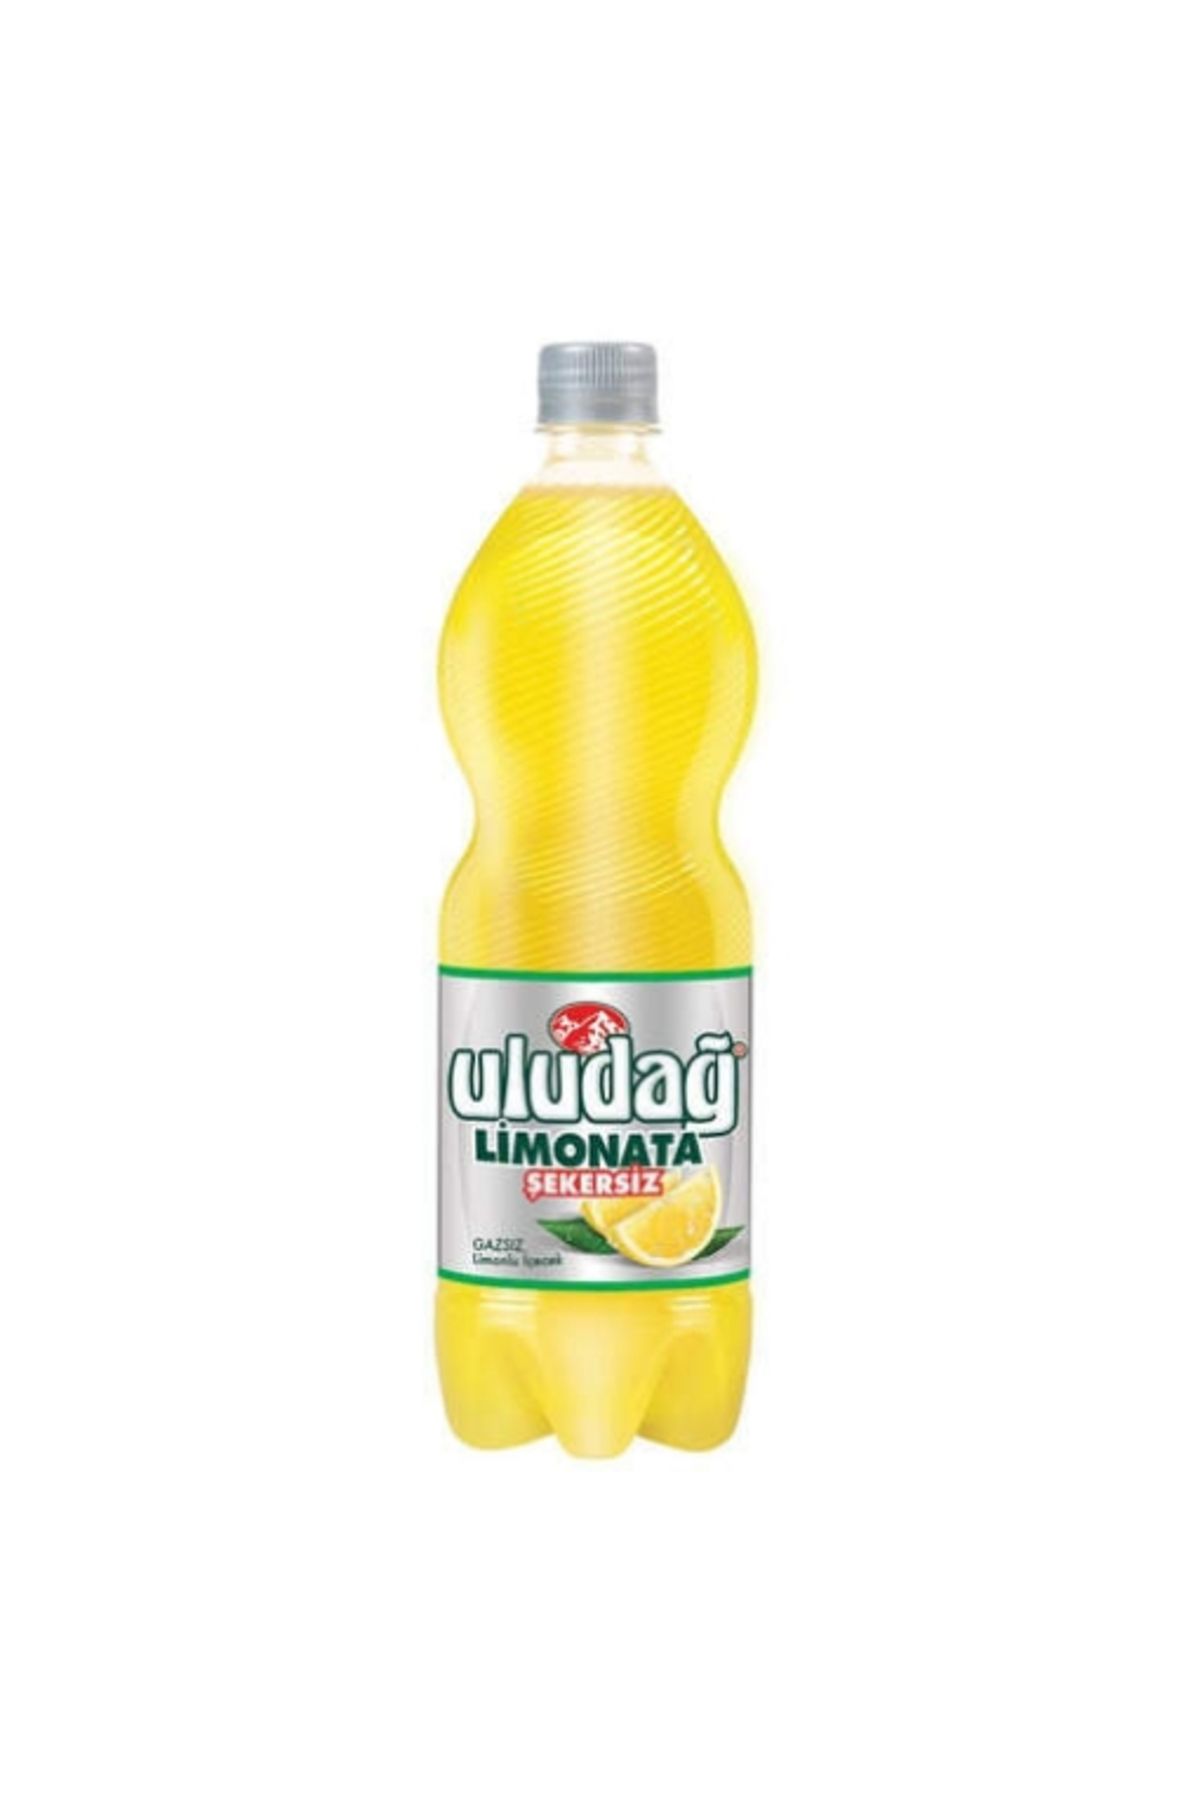 Uludağ 6'lı Uludağ Limonata Şekersiz 1 LT